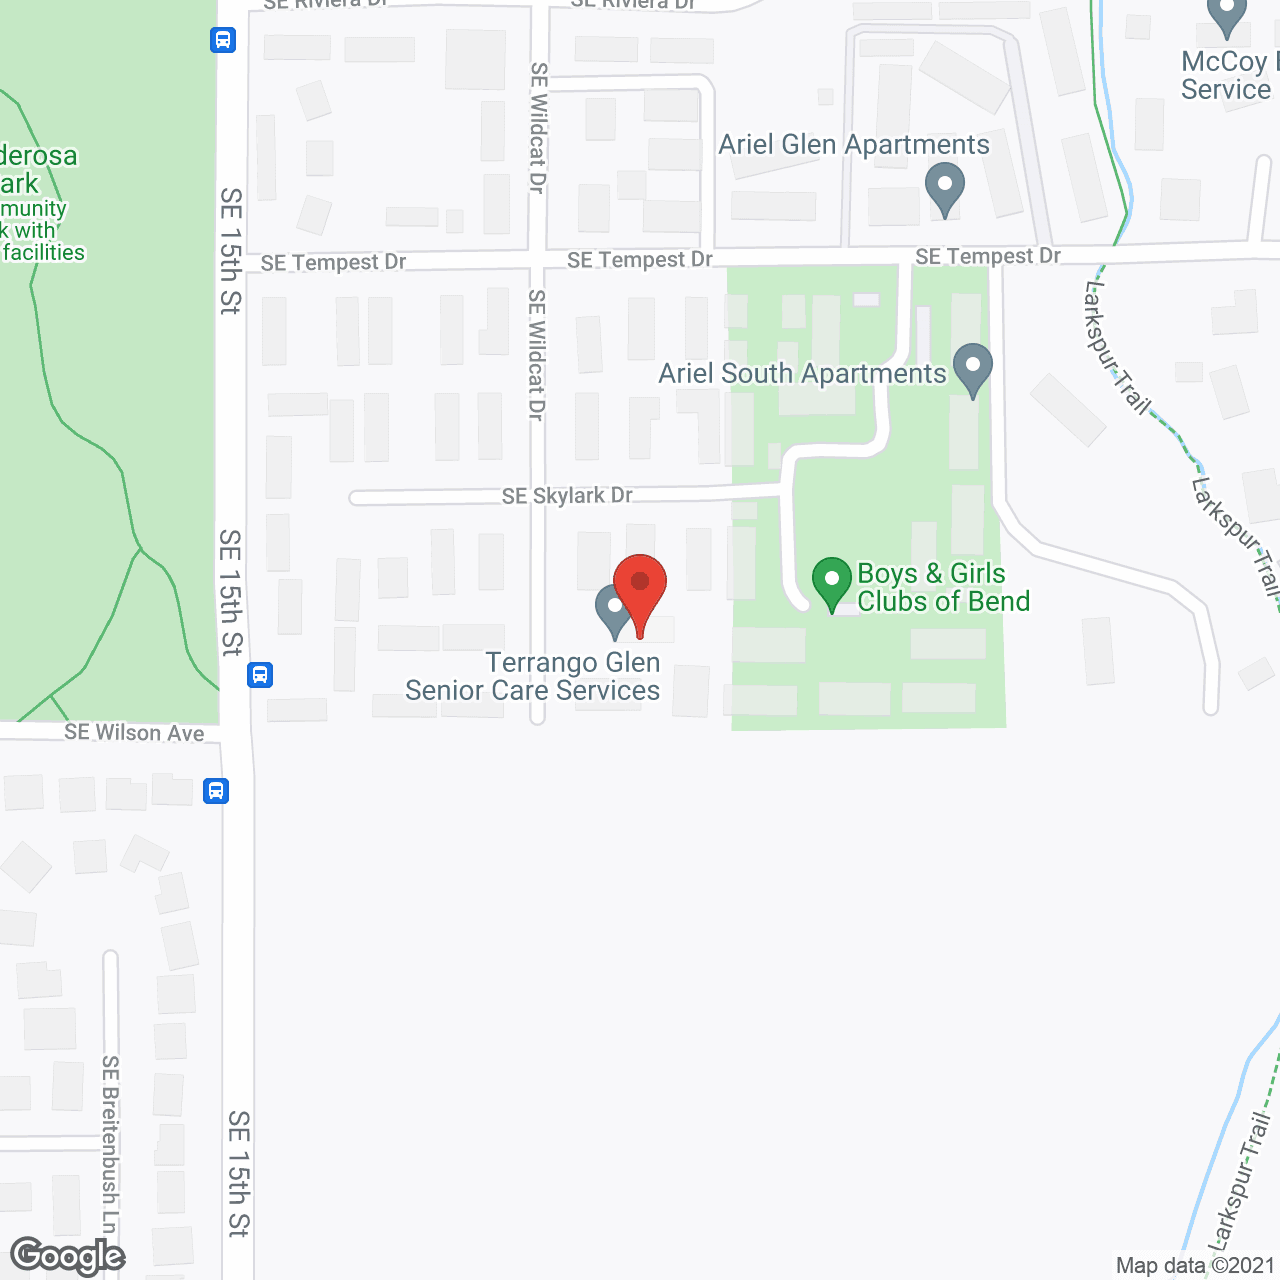 Terrango Glen AFH LLC in google map